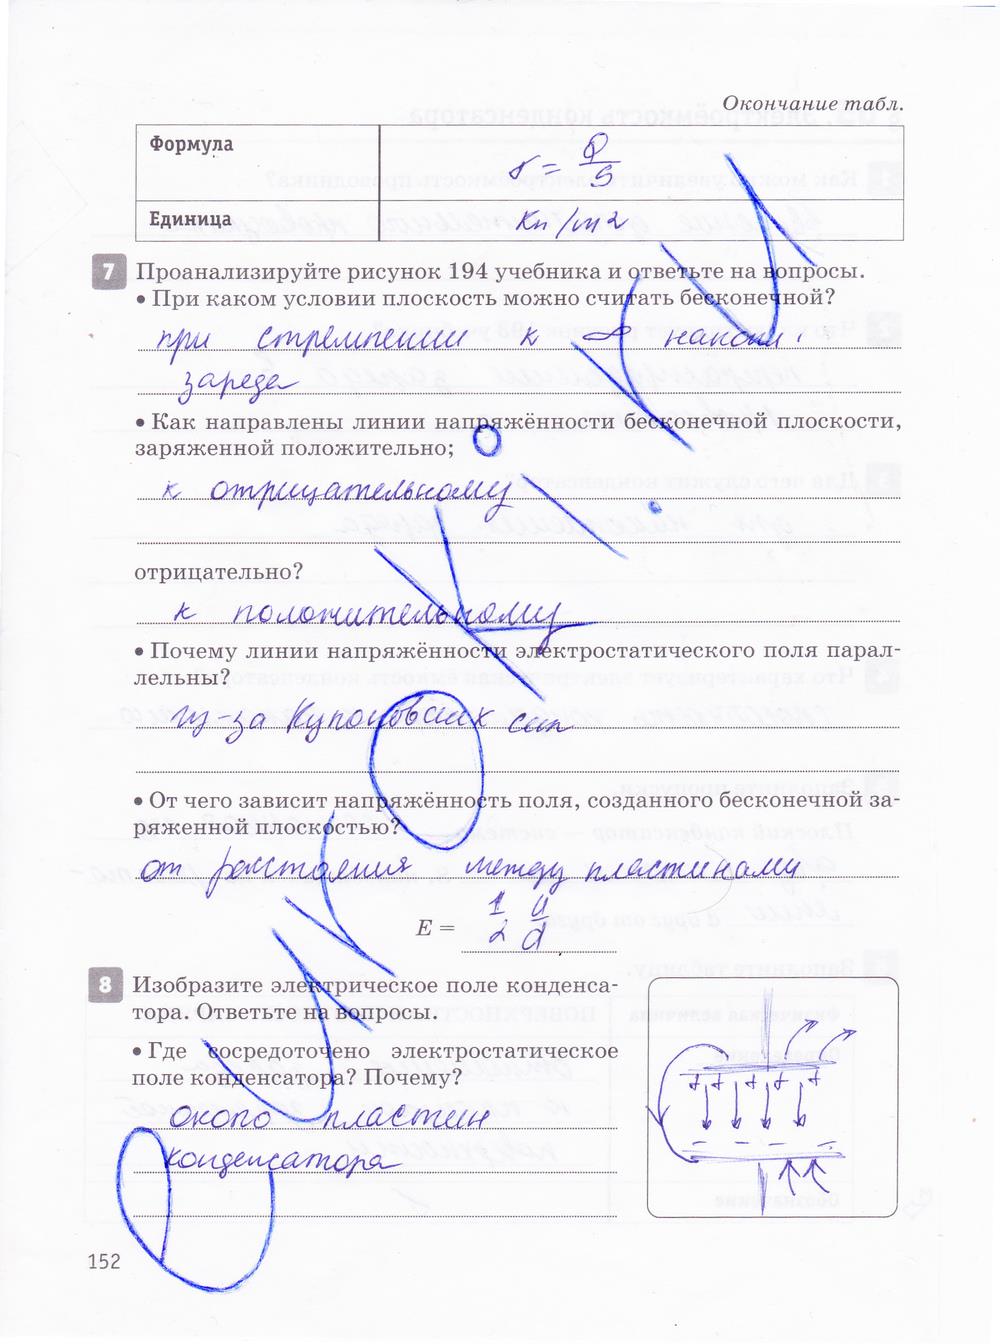 гдз 10 класс рабочая тетрадь страница 152 физика Касьянов, Дмитриева